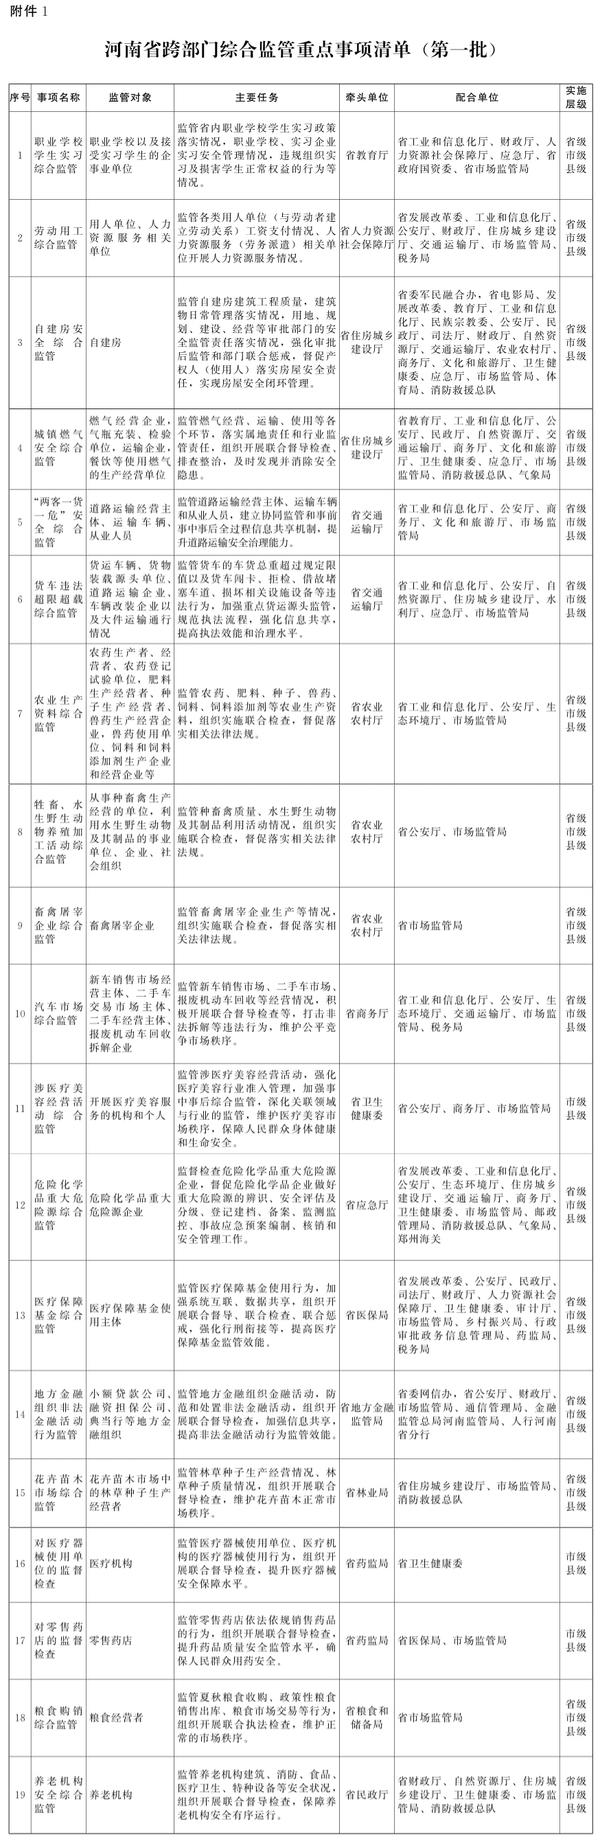 河南省人民政府办公厅关于印发河南省深入推进跨部门综合监管实施方案的通知